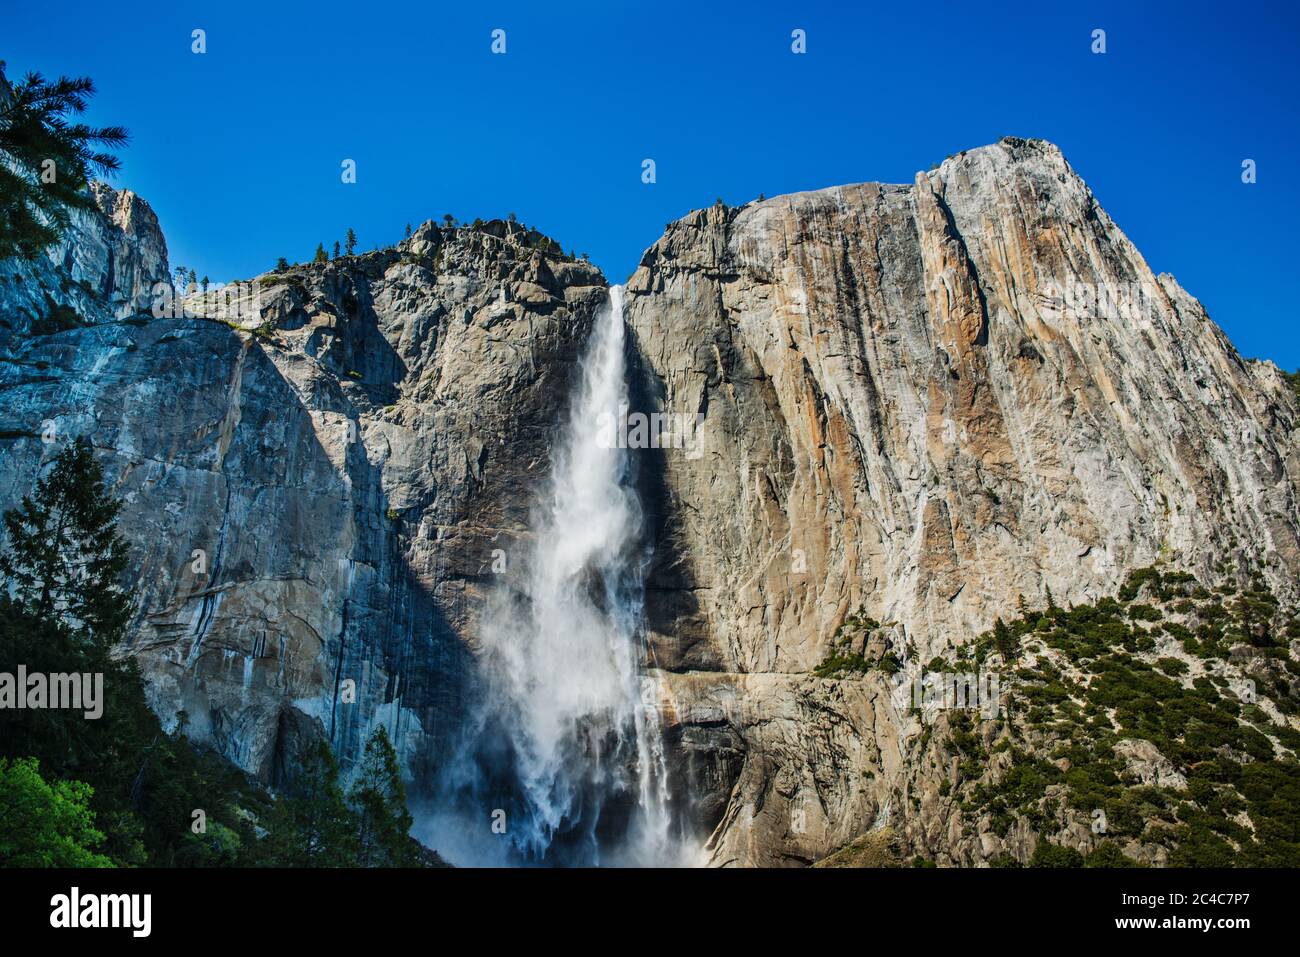 Bridalveil Fall, vallée de Yosemite, Yosemite National Park, California, USA Banque D'Images